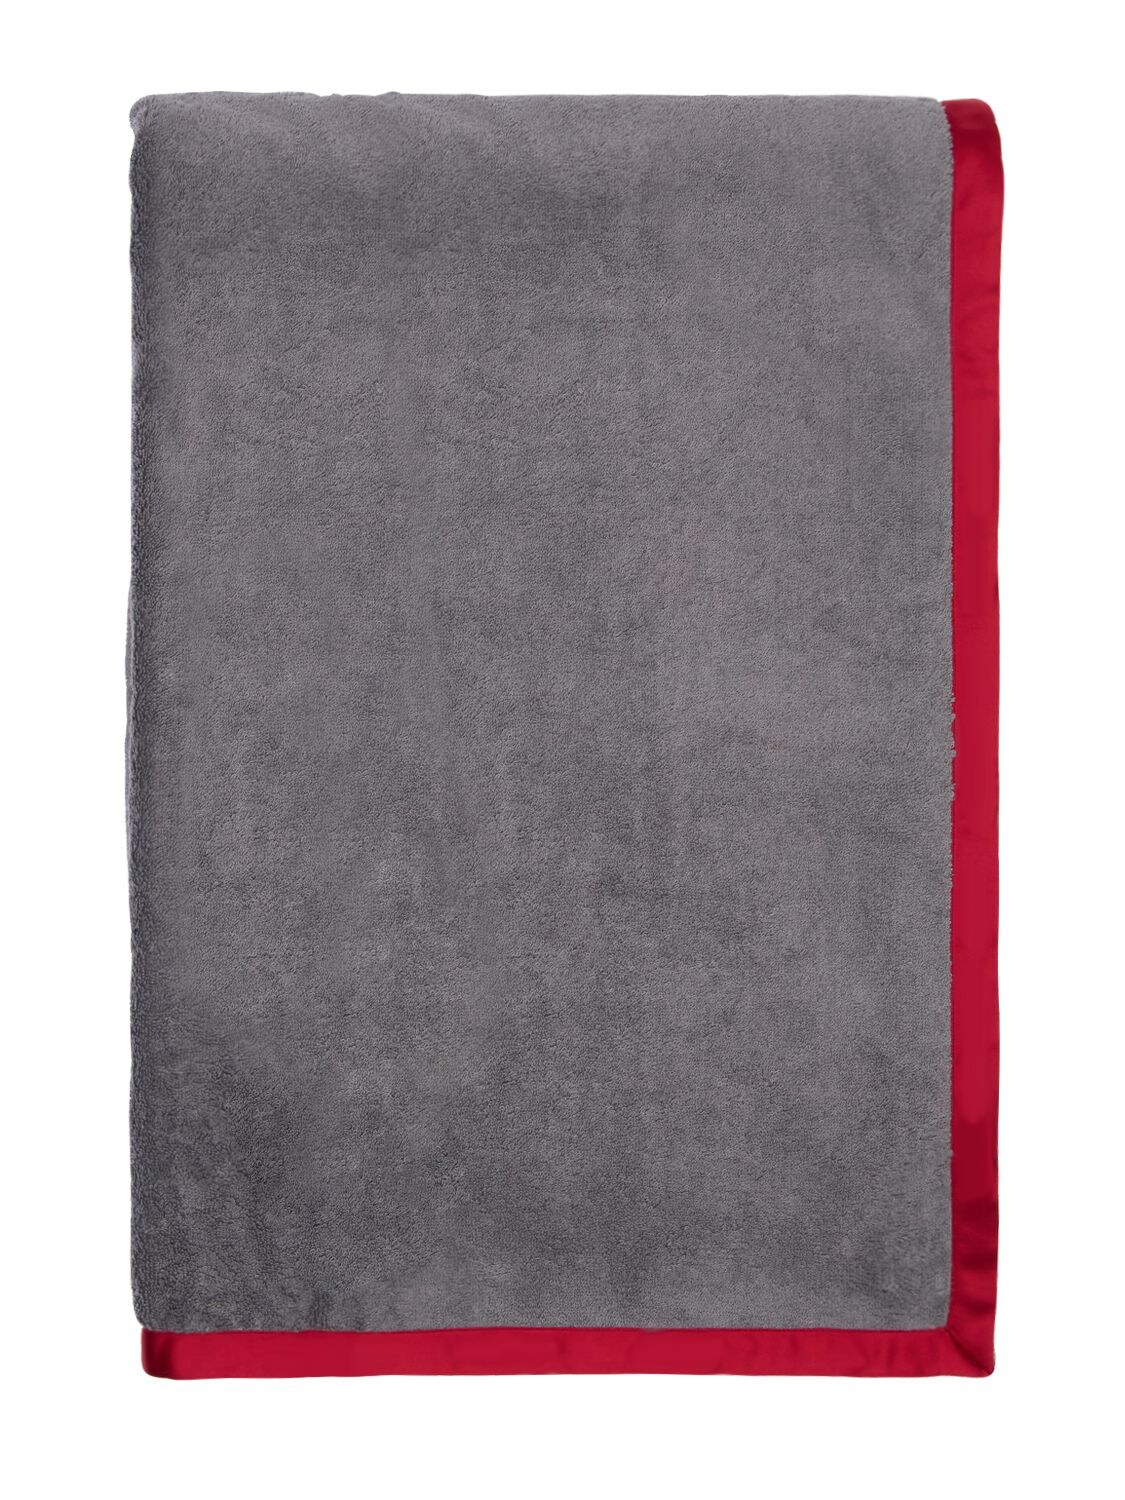 Alessandro Di Marco 纯棉毛圈布浴巾 In Grey,red